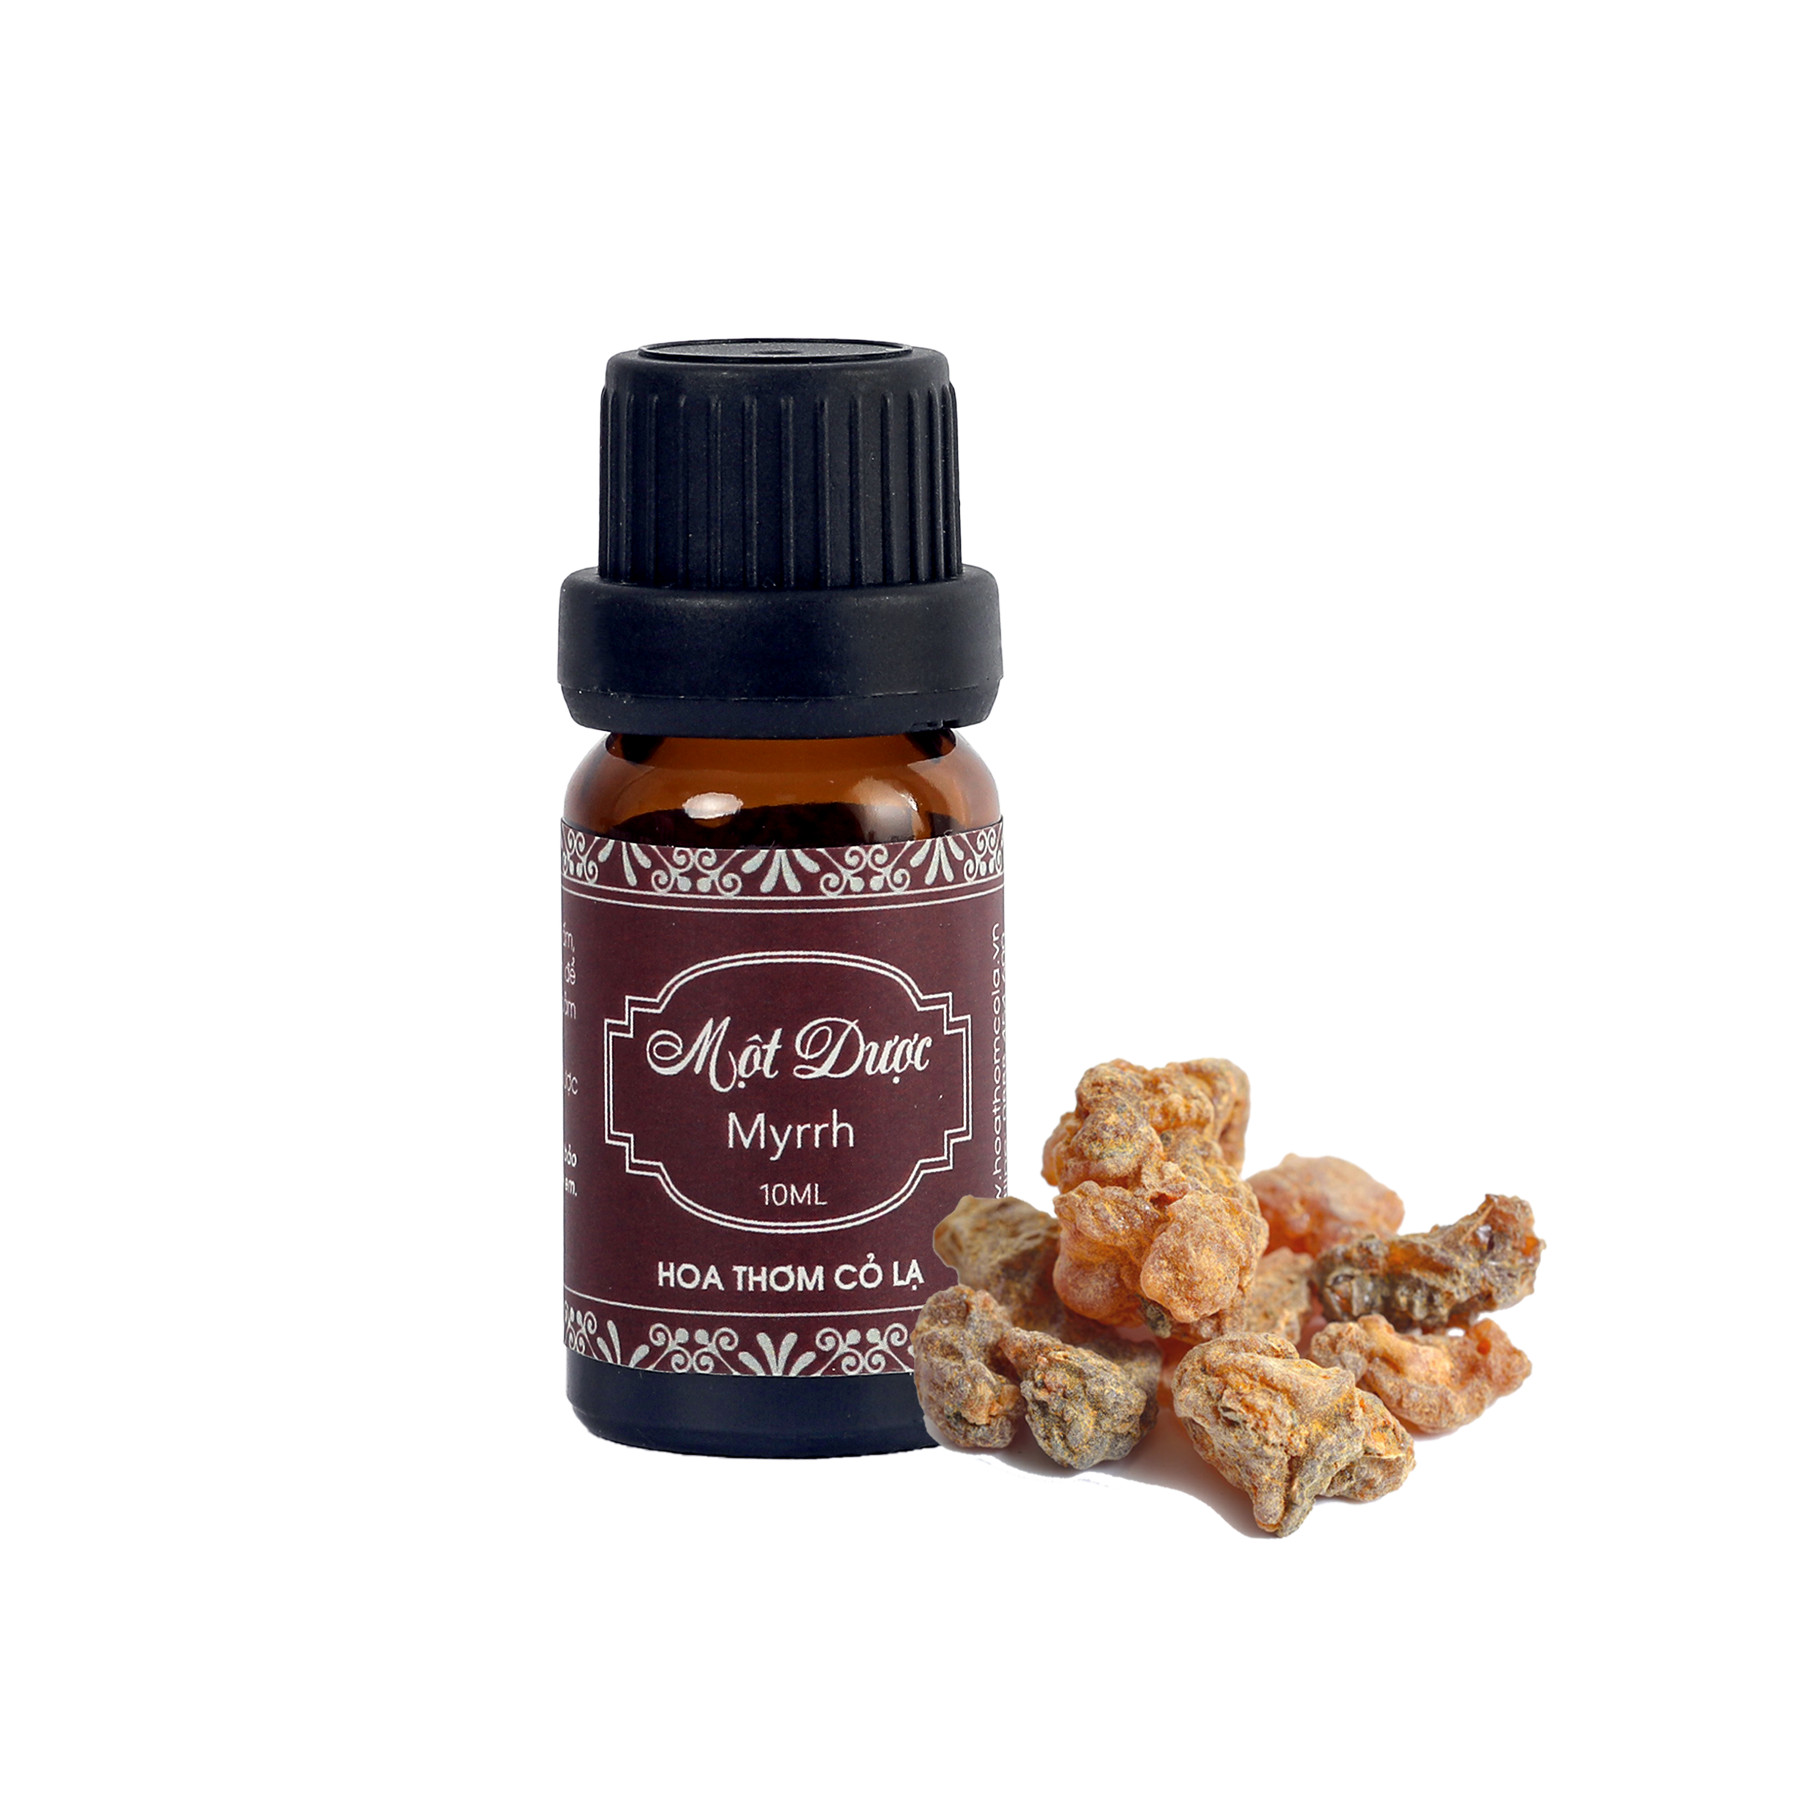 Tinh Dầu Một Dược - Myrrh Essential Oil 5ml - Hoa Thơm Cỏ Lạ